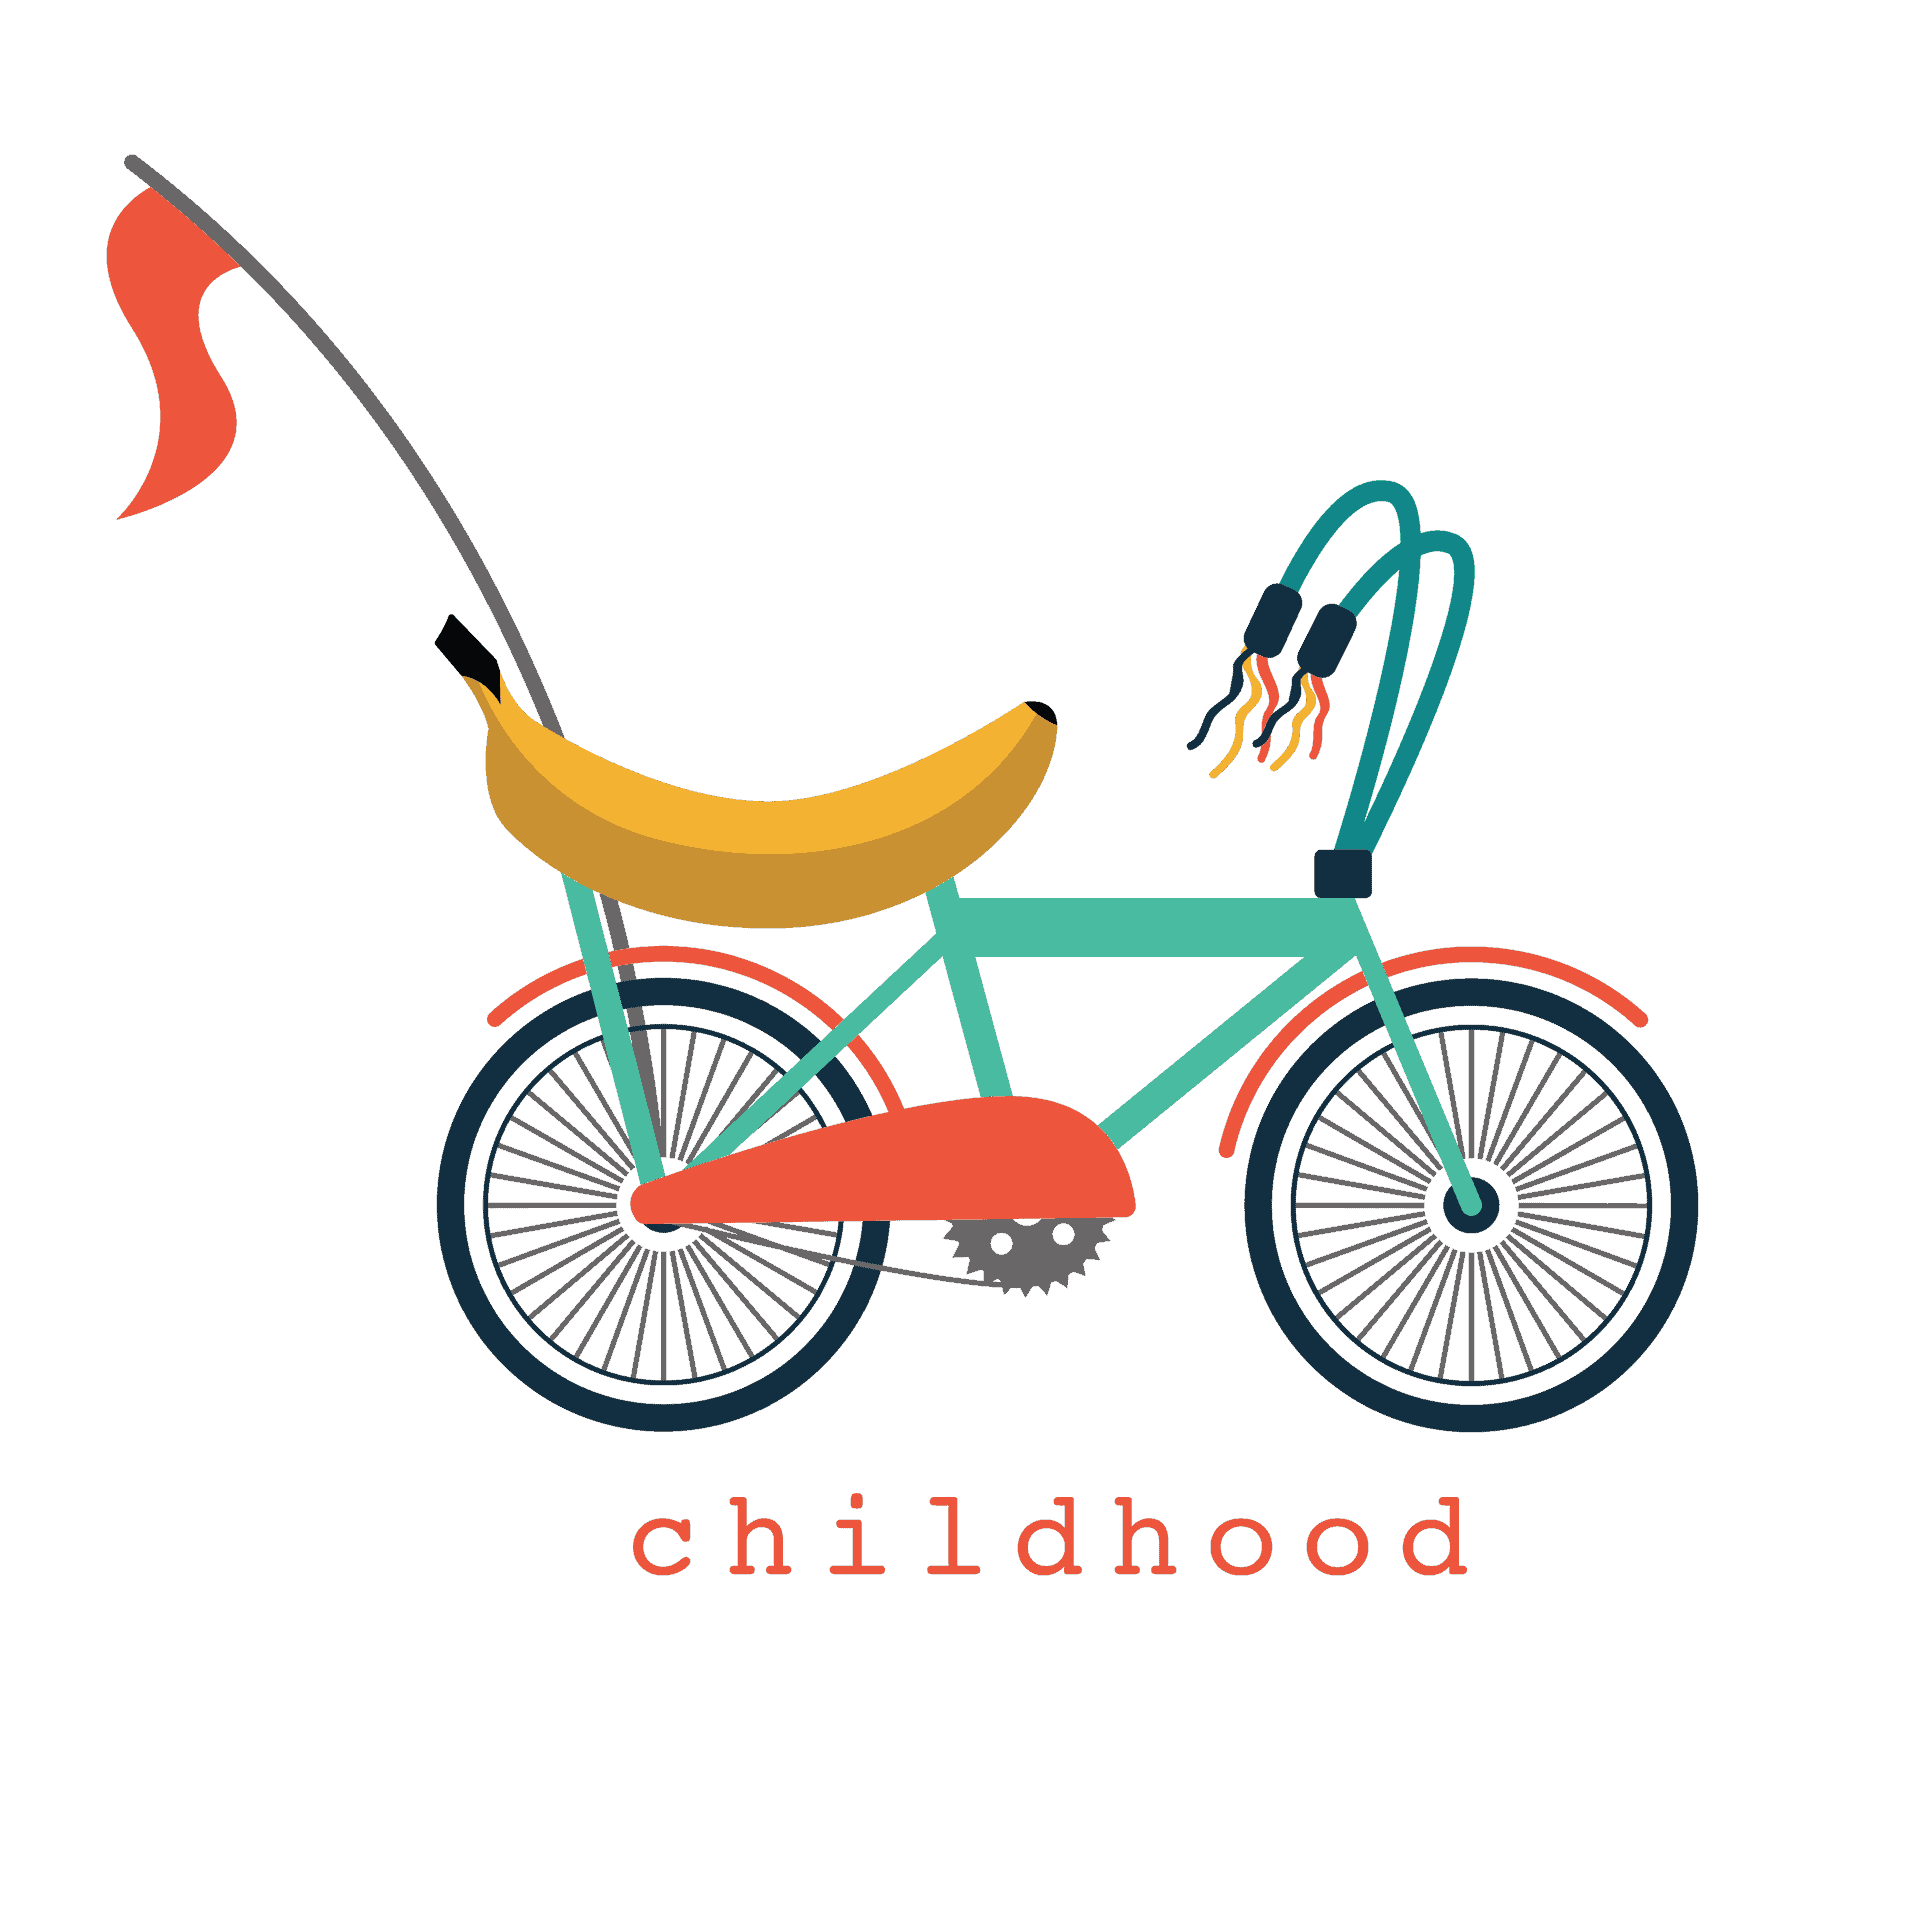 Childhood Bicycle